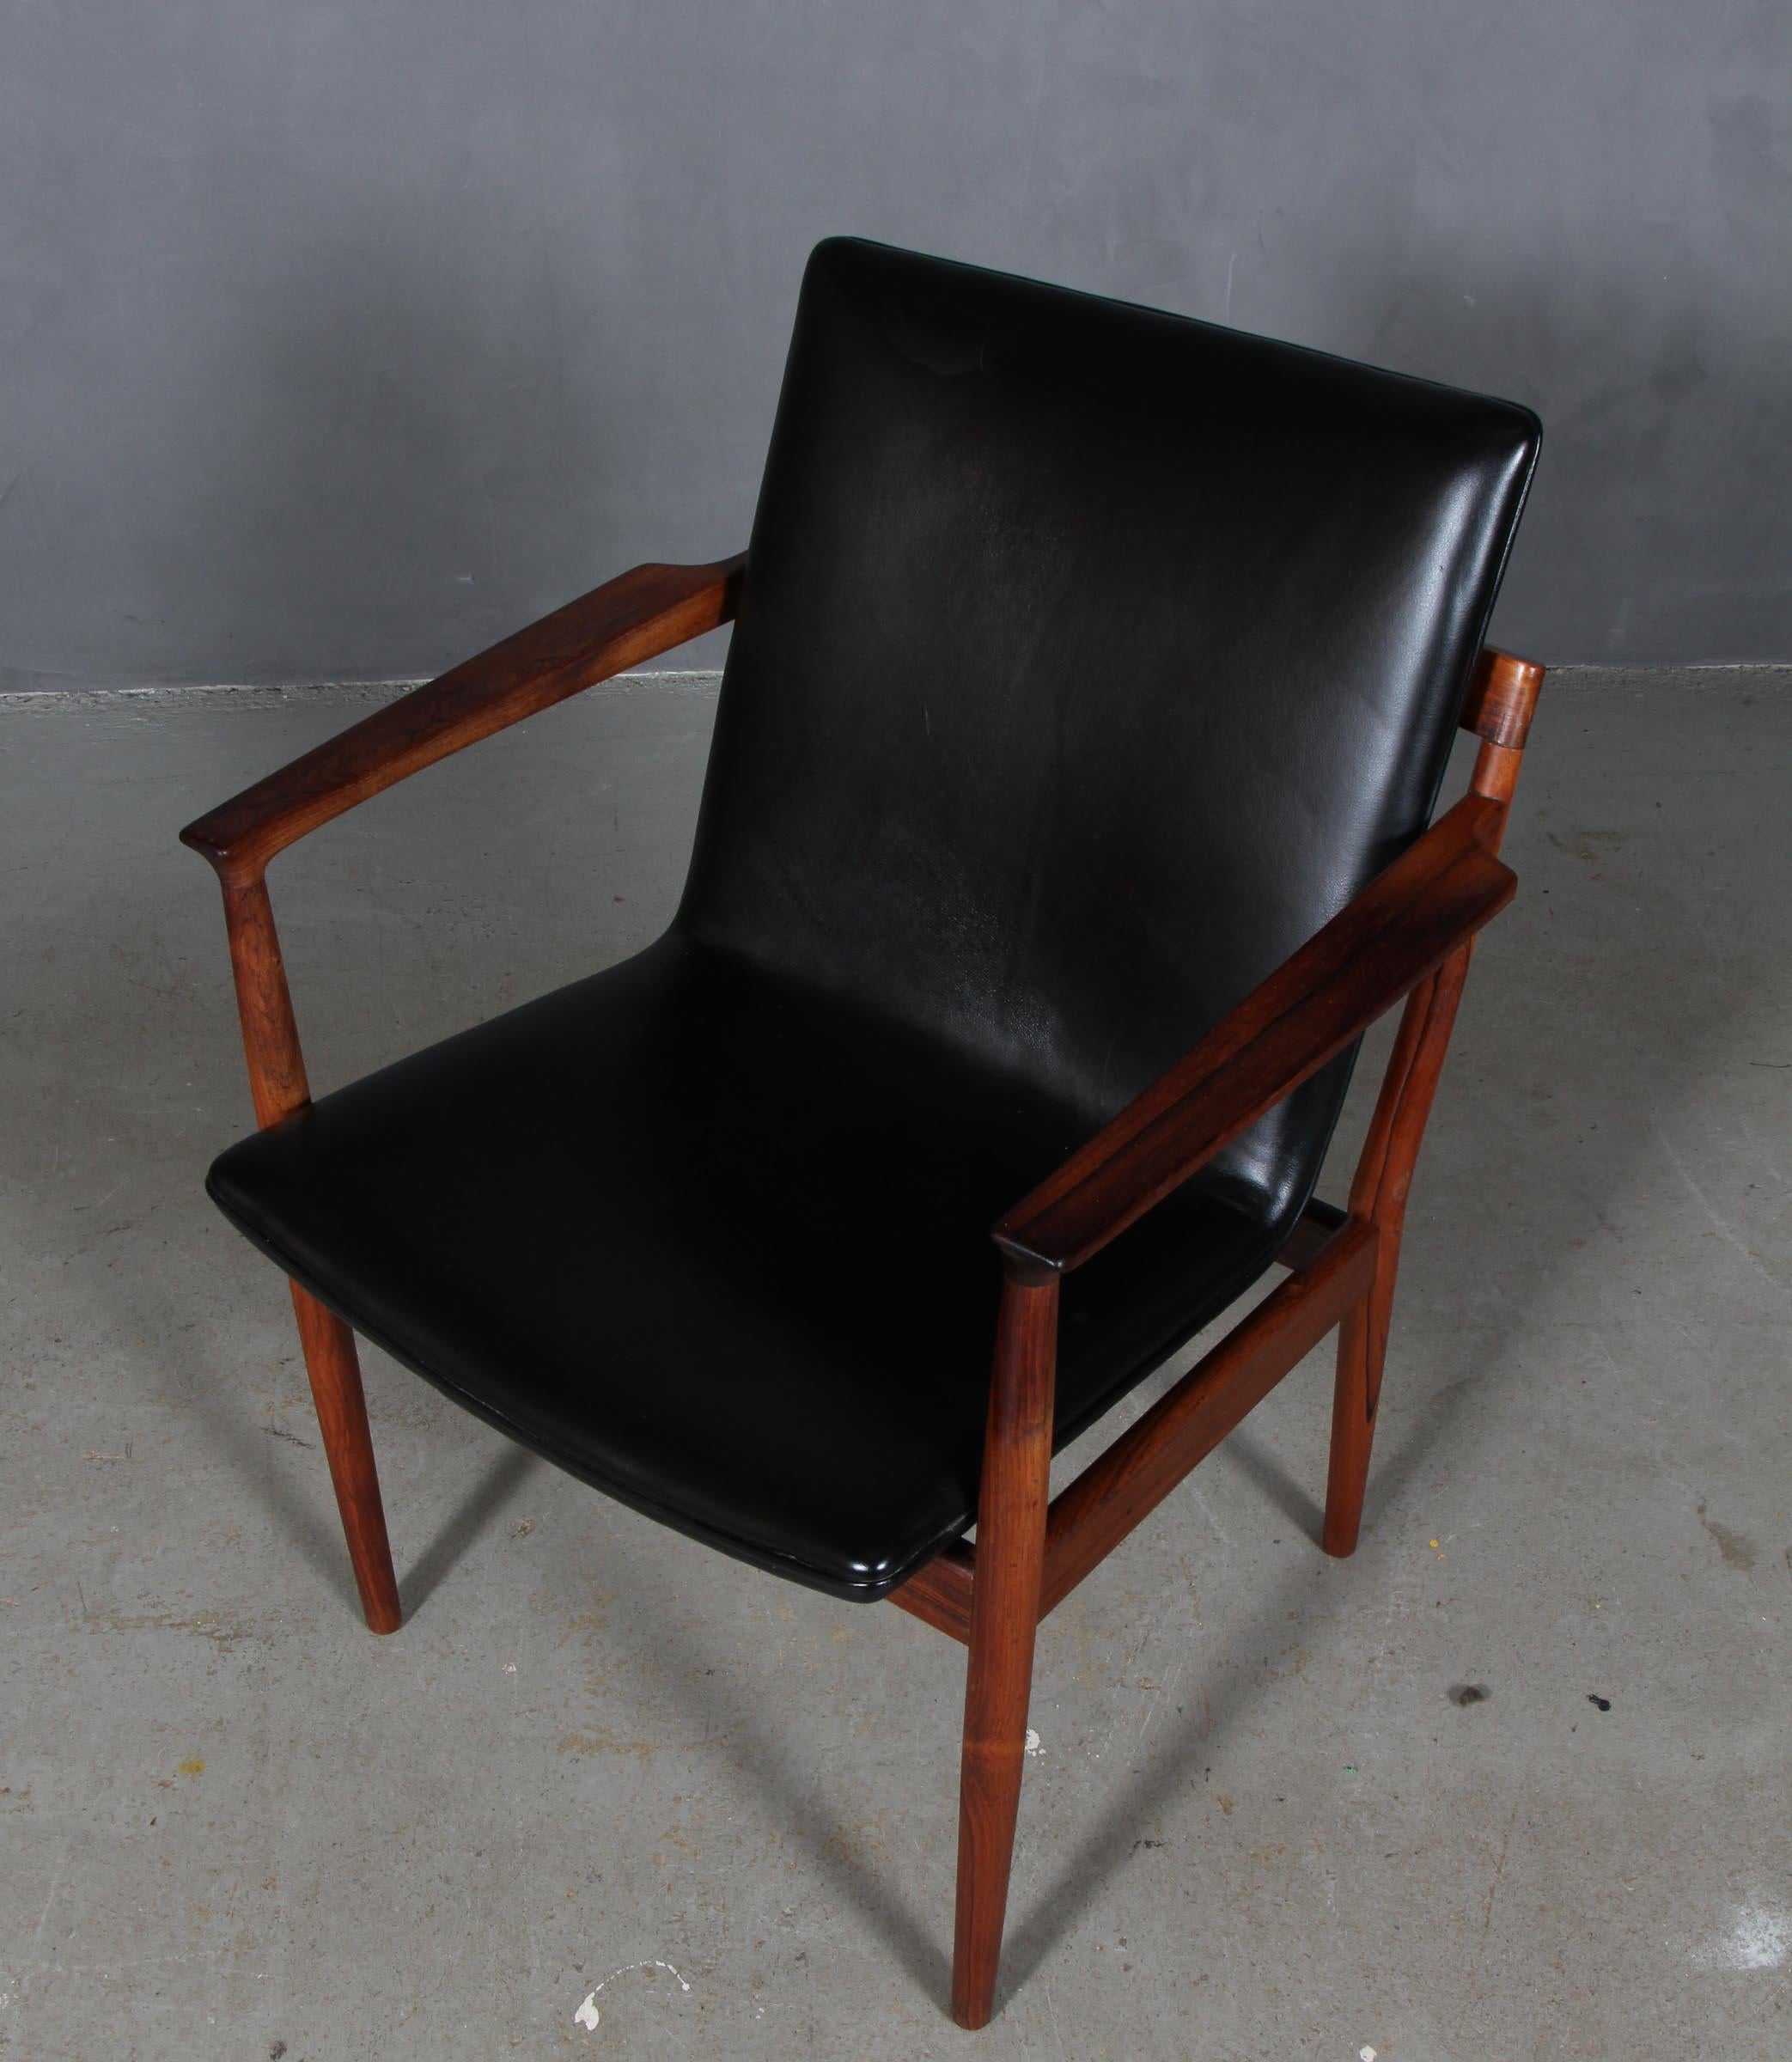 Steffen Zyrach Larsen armchair in rosewood with original black leather.

Made by Gustav Bertelsen.